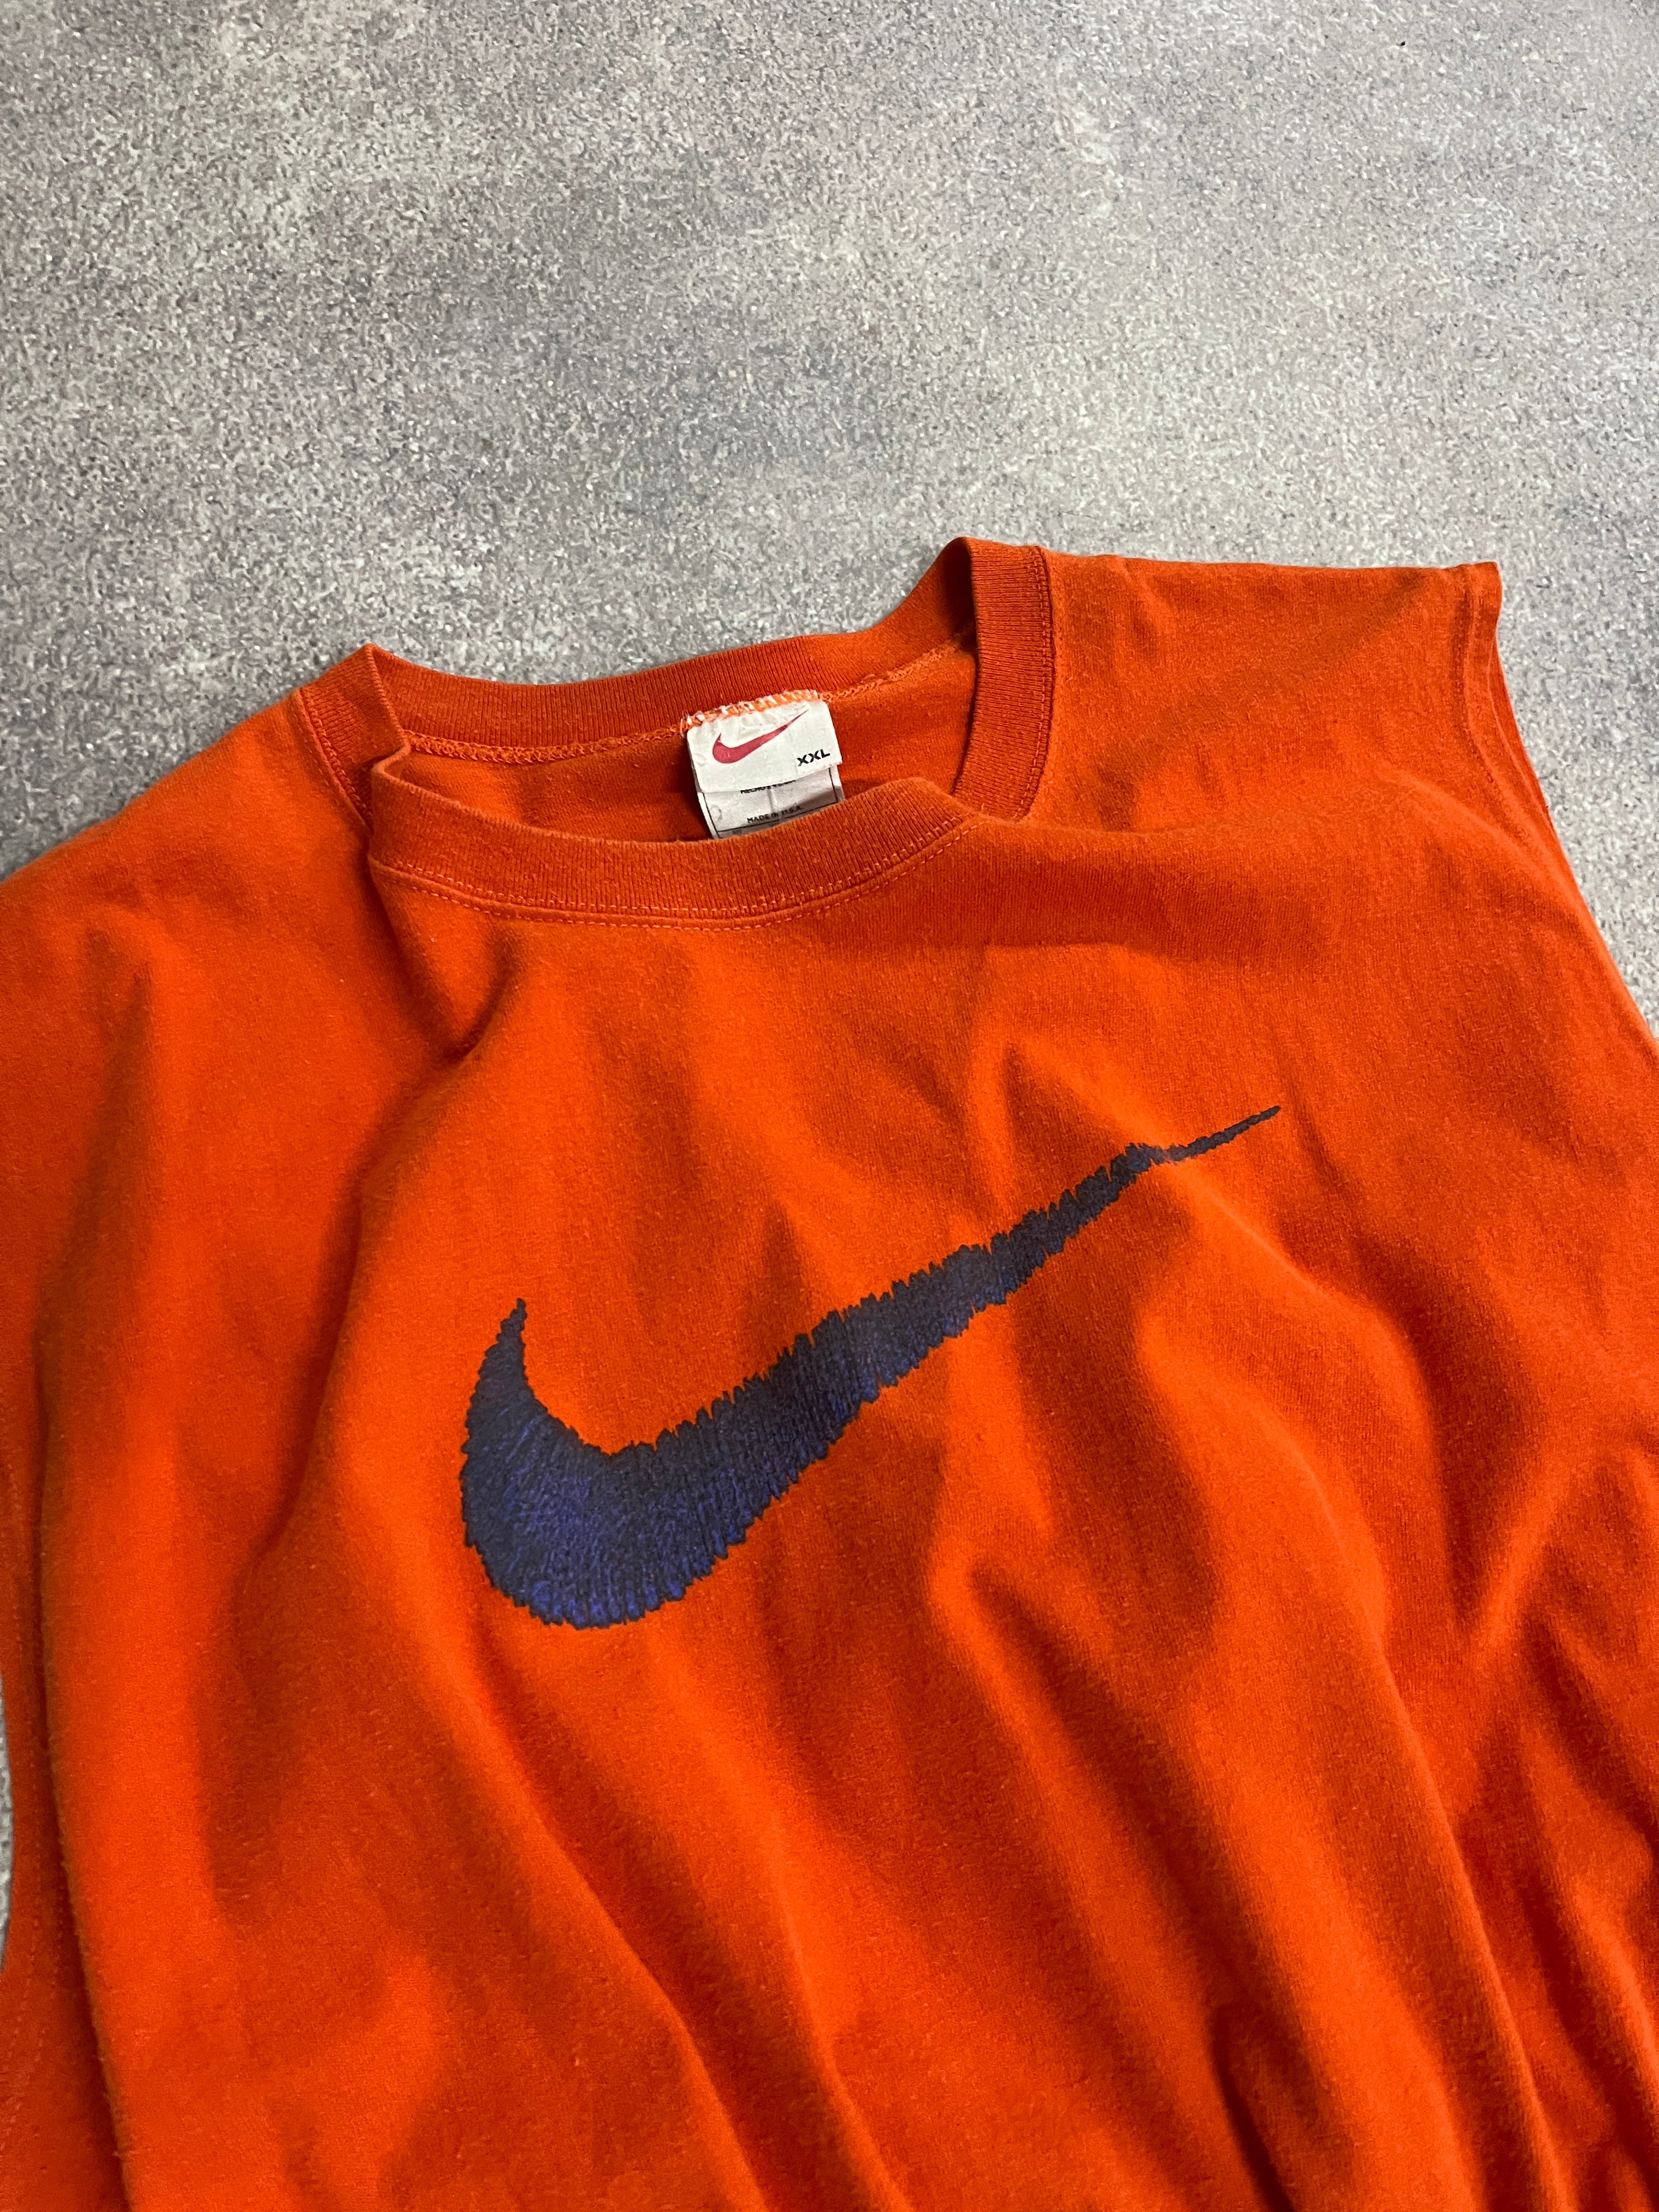 Vintage Nike Cropped Top Orange // X-Large - RHAGHOUSE VINTAGE